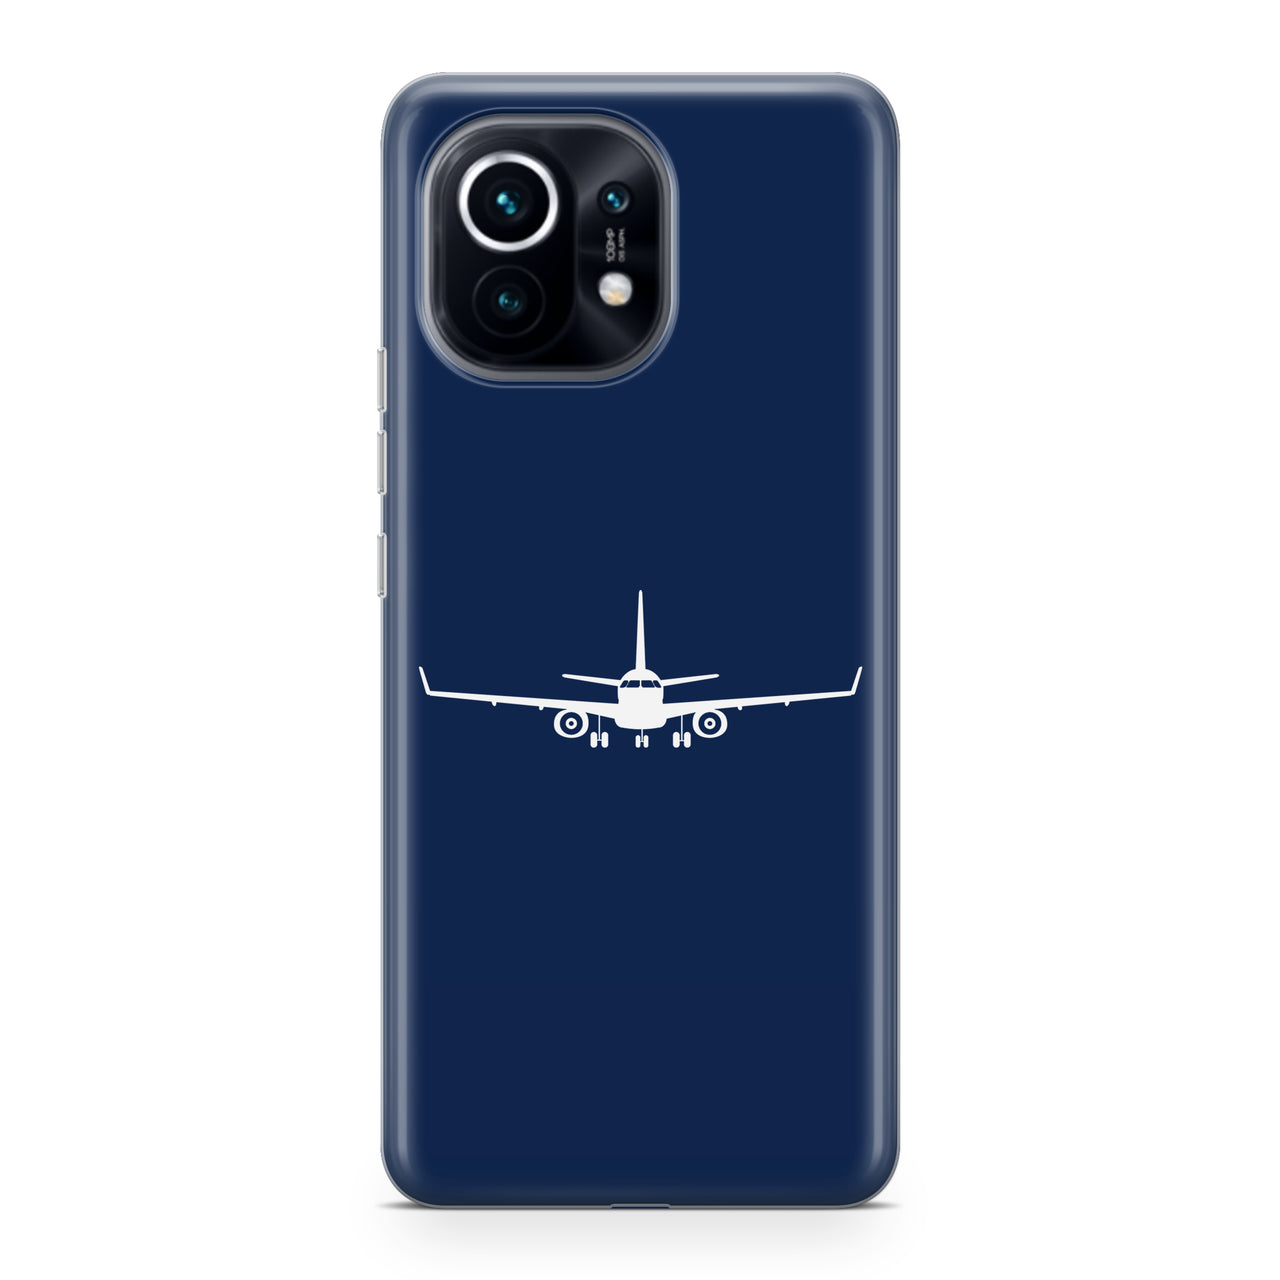 Embraer E-190 Silhouette Plane Designed Xiaomi Cases